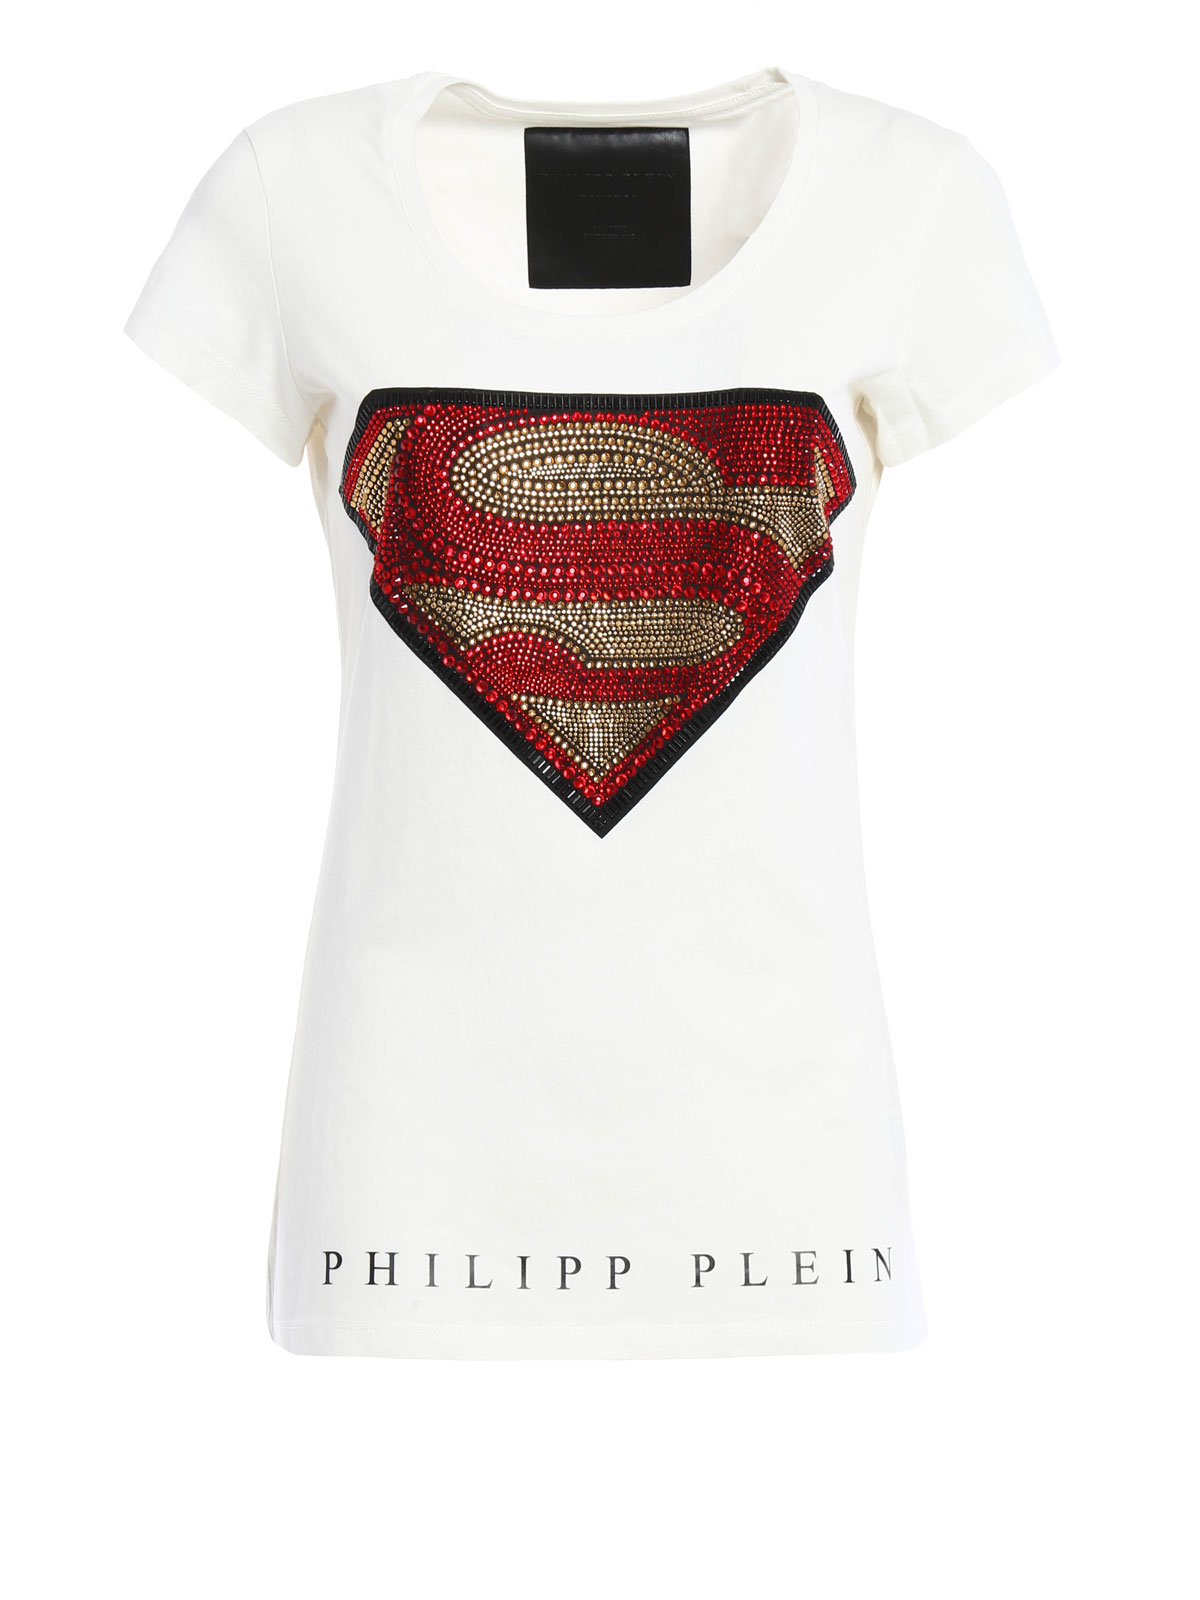 philipp plein superman